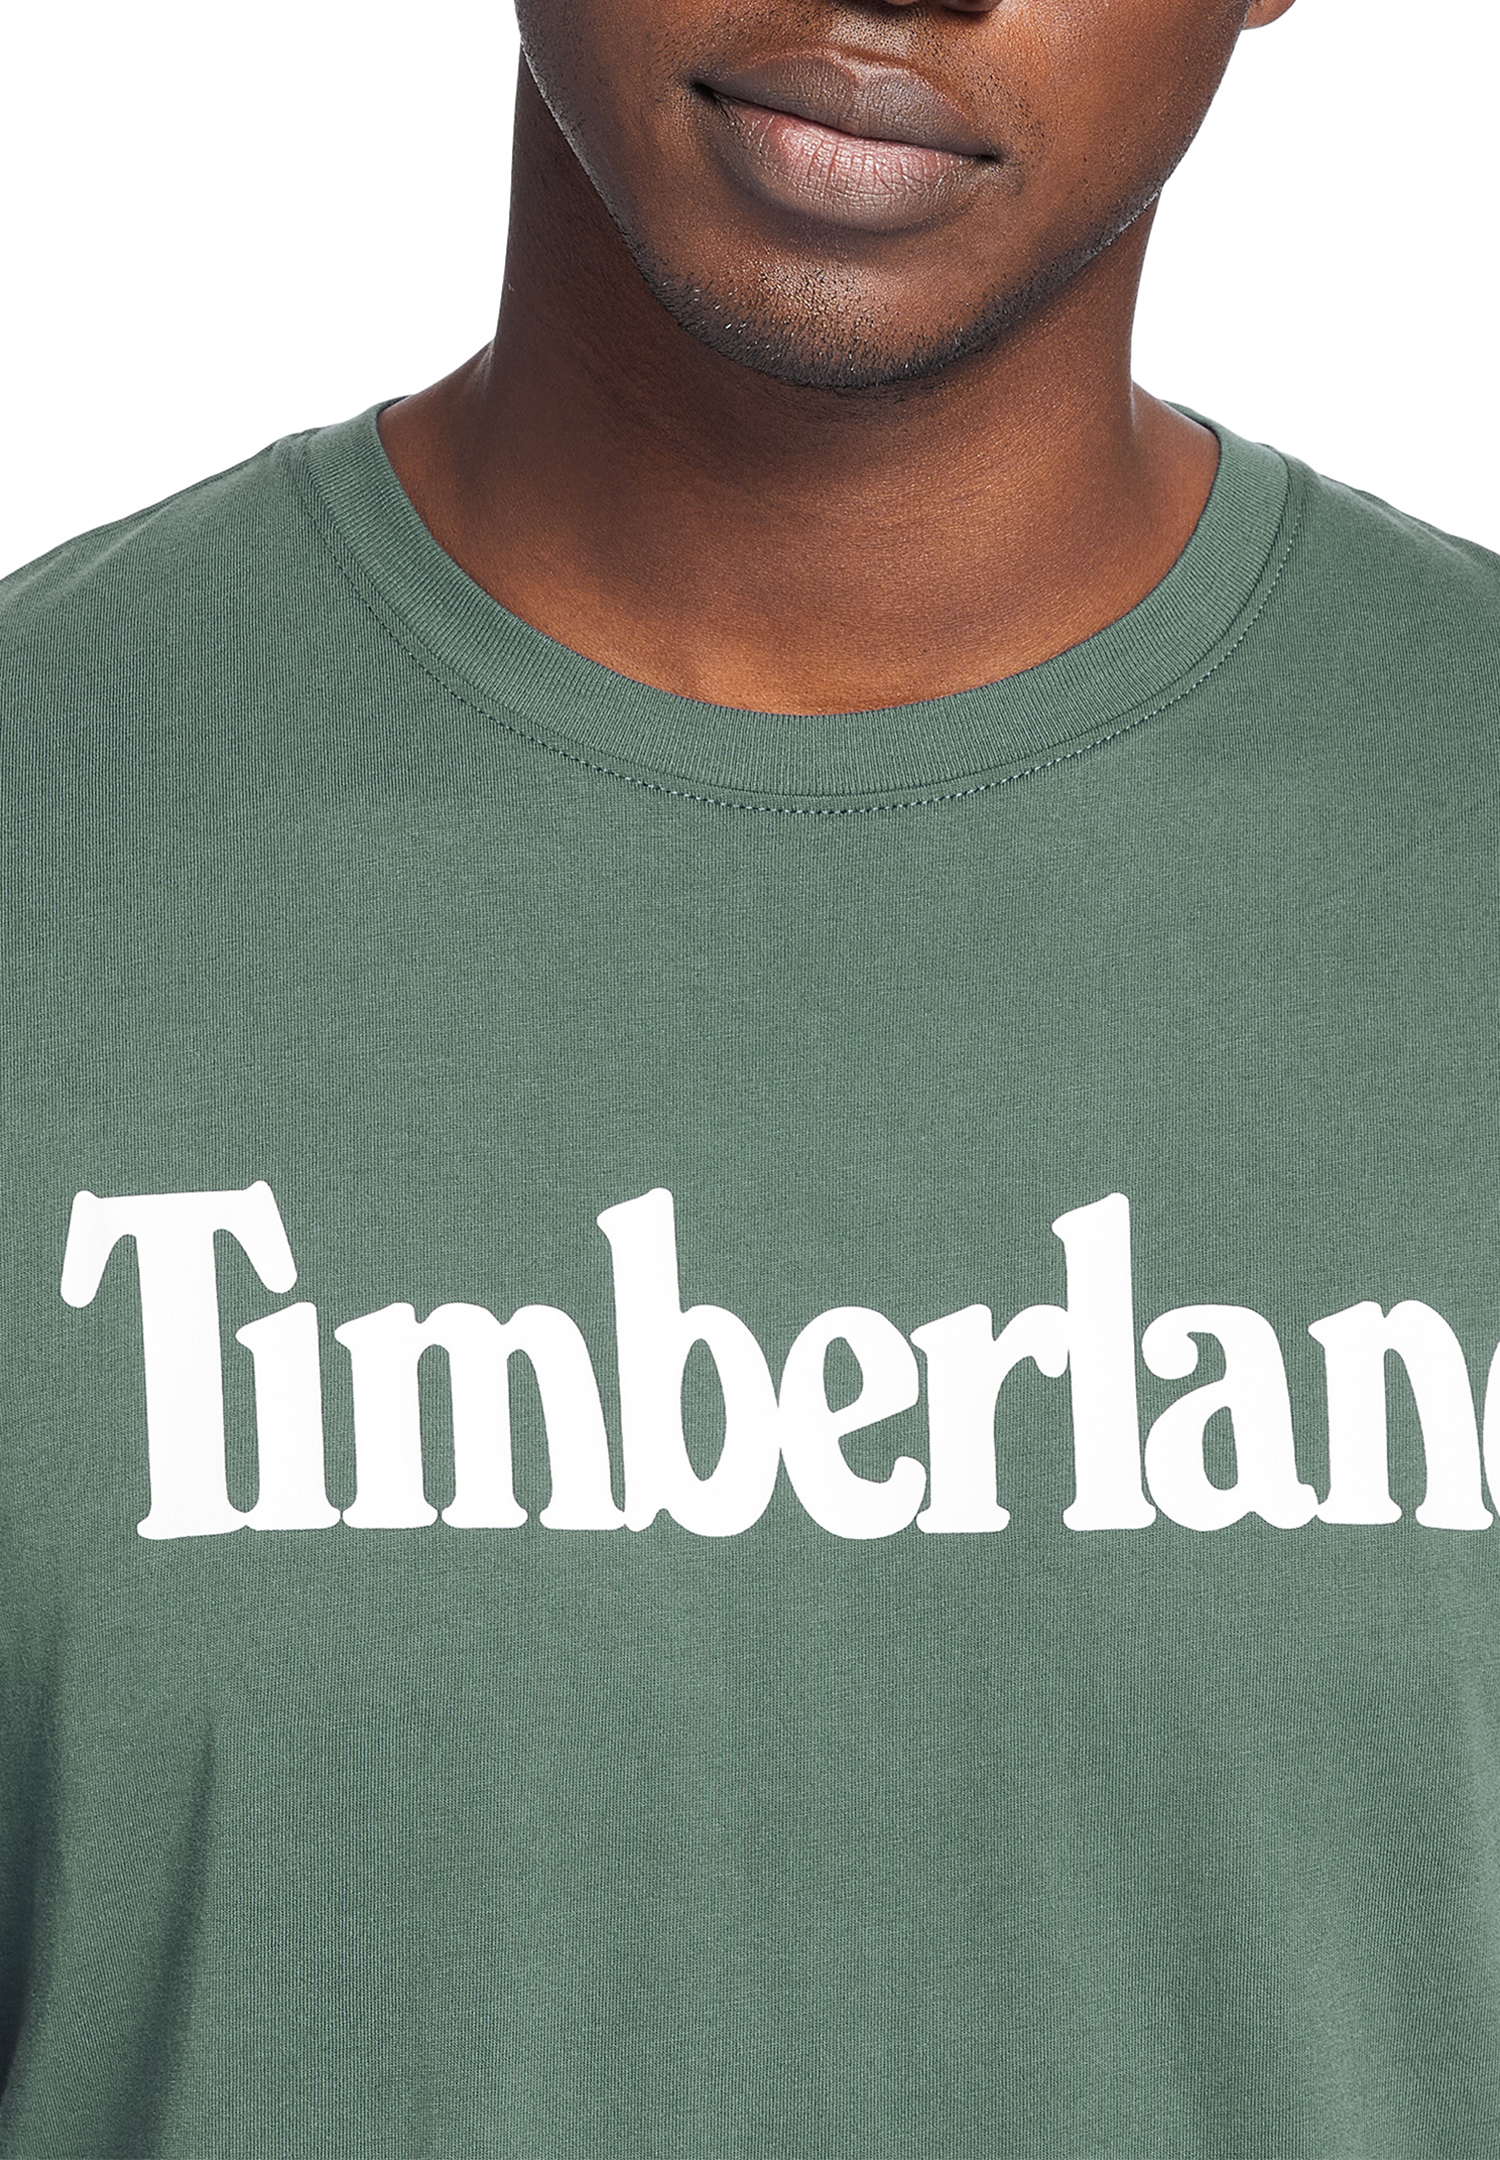 Timberland TFO SS Linear Tee Herren T-Shirt Shirt TB0A2BRN Grün von Timberland